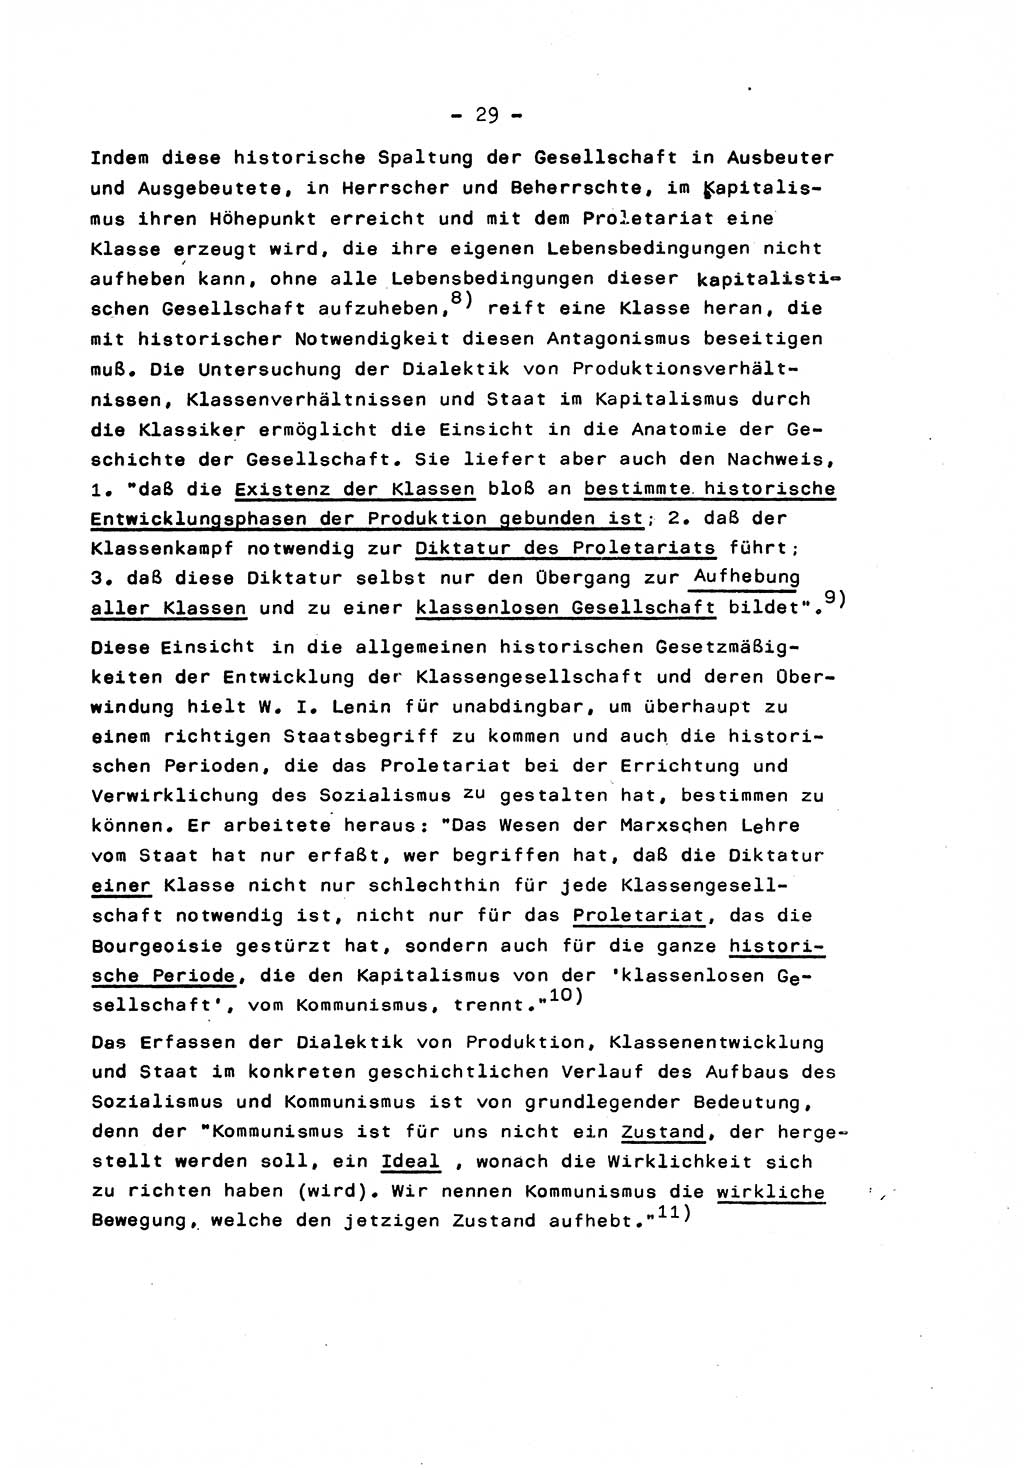 Marxistisch-leninistische Staats- und Rechtstheorie [Deutsche Demokratische Republik (DDR)] 1975, Seite 29 (ML St.-R.-Th. DDR 1975, S. 29)